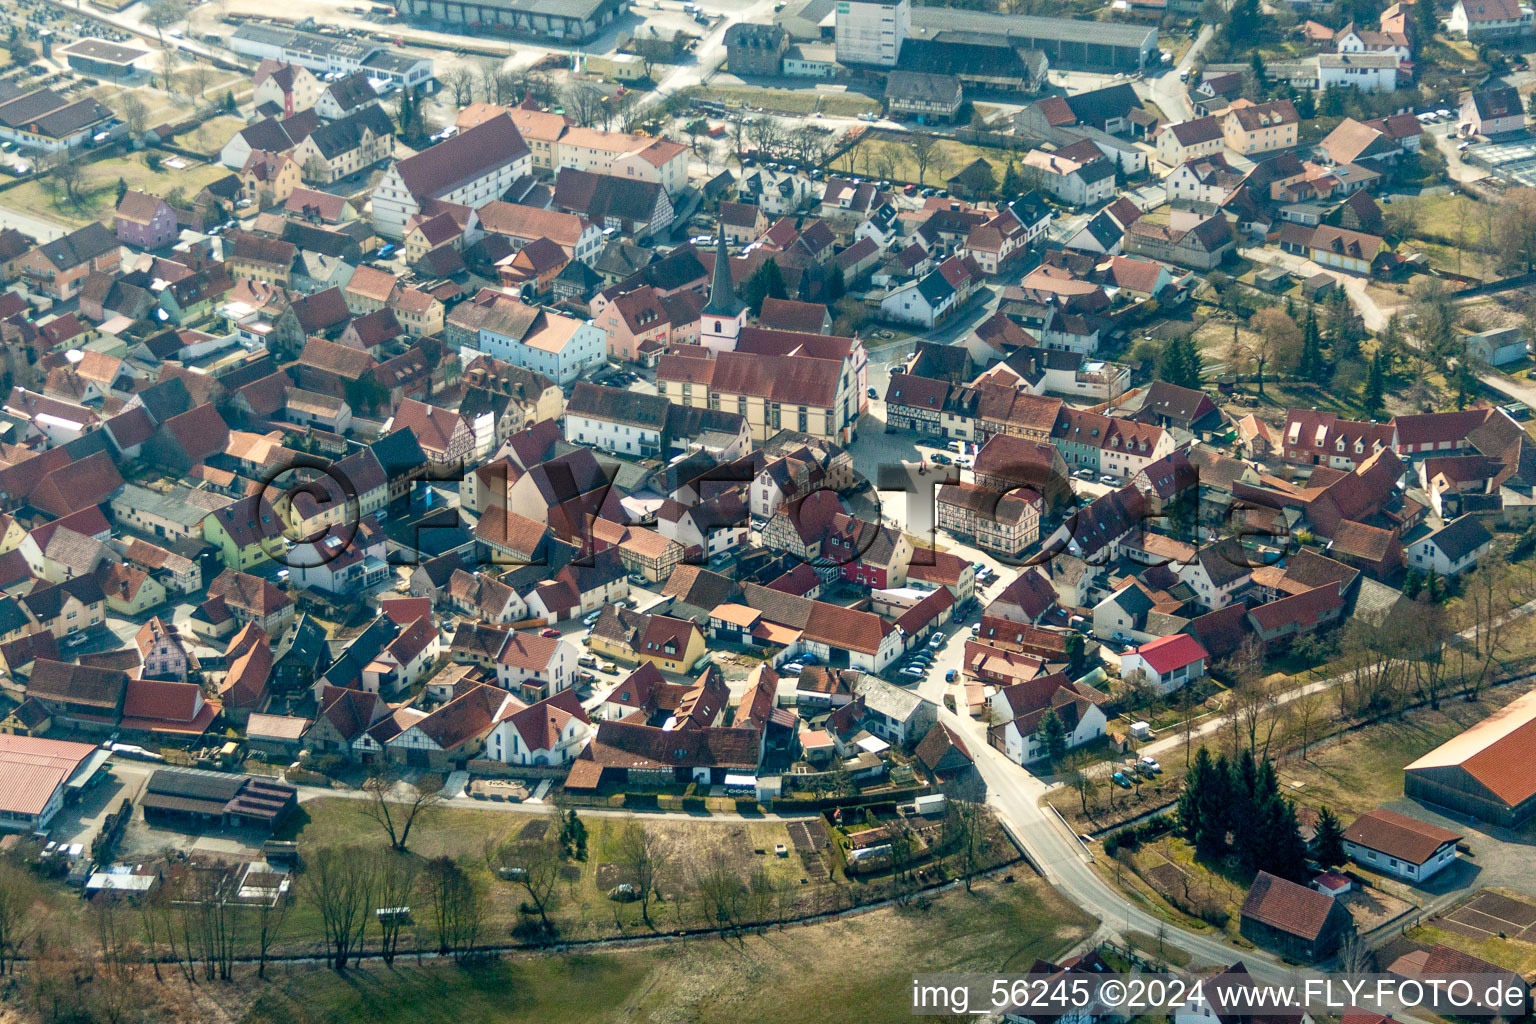 Vue aérienne de Bâtiment d'église au centre du village à Sulzfeld dans le département Bavière, Allemagne